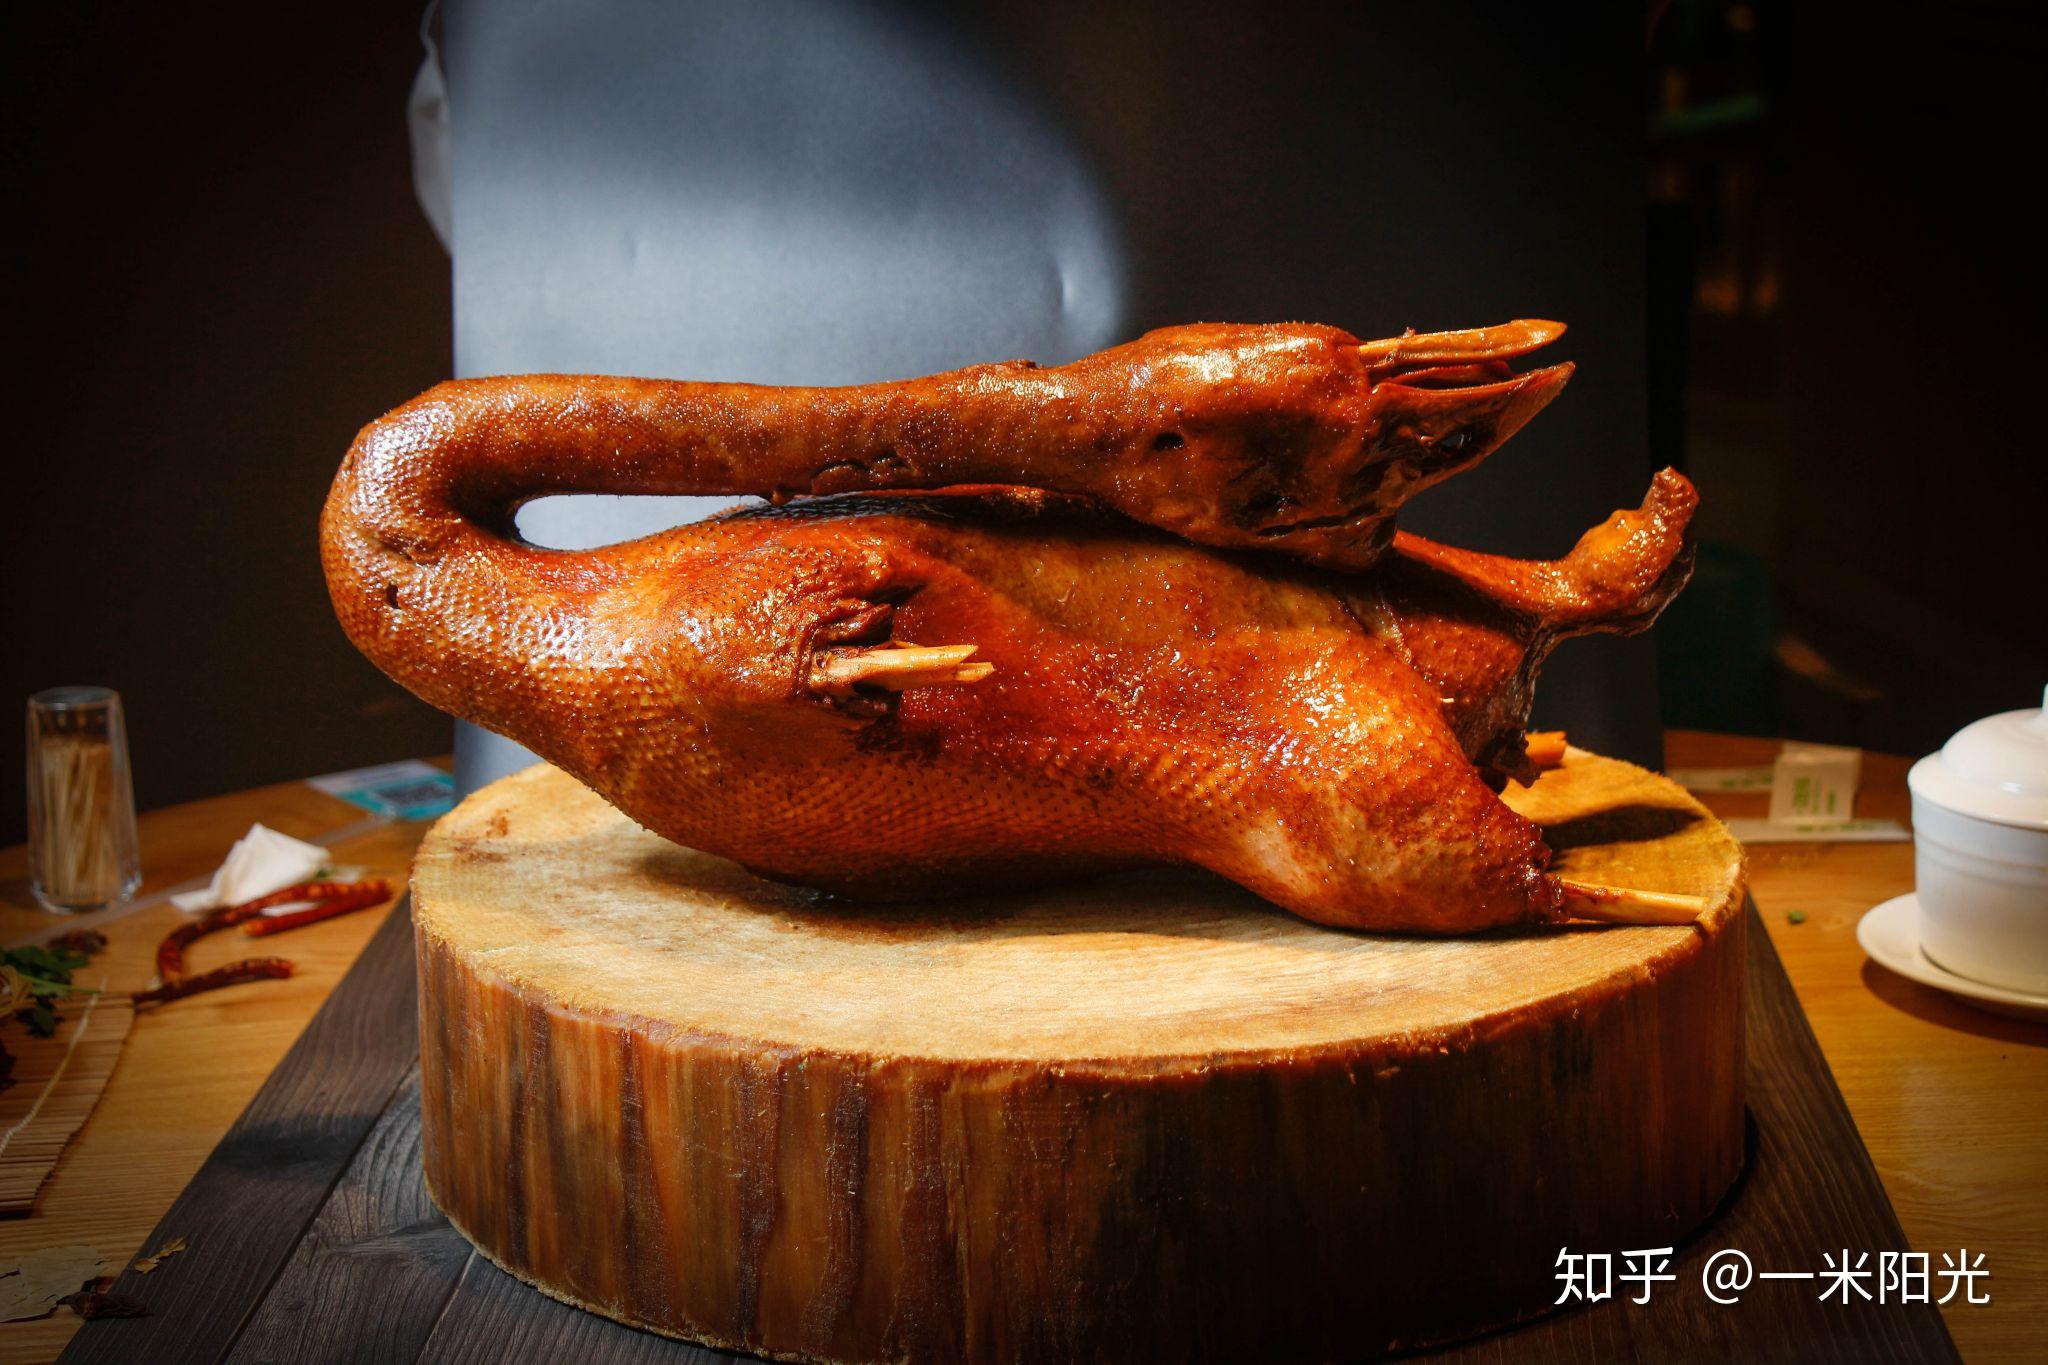 铁锅炖大鹅,铁锅炖大鹅的家常做法 - 美食杰铁锅炖大鹅做法大全